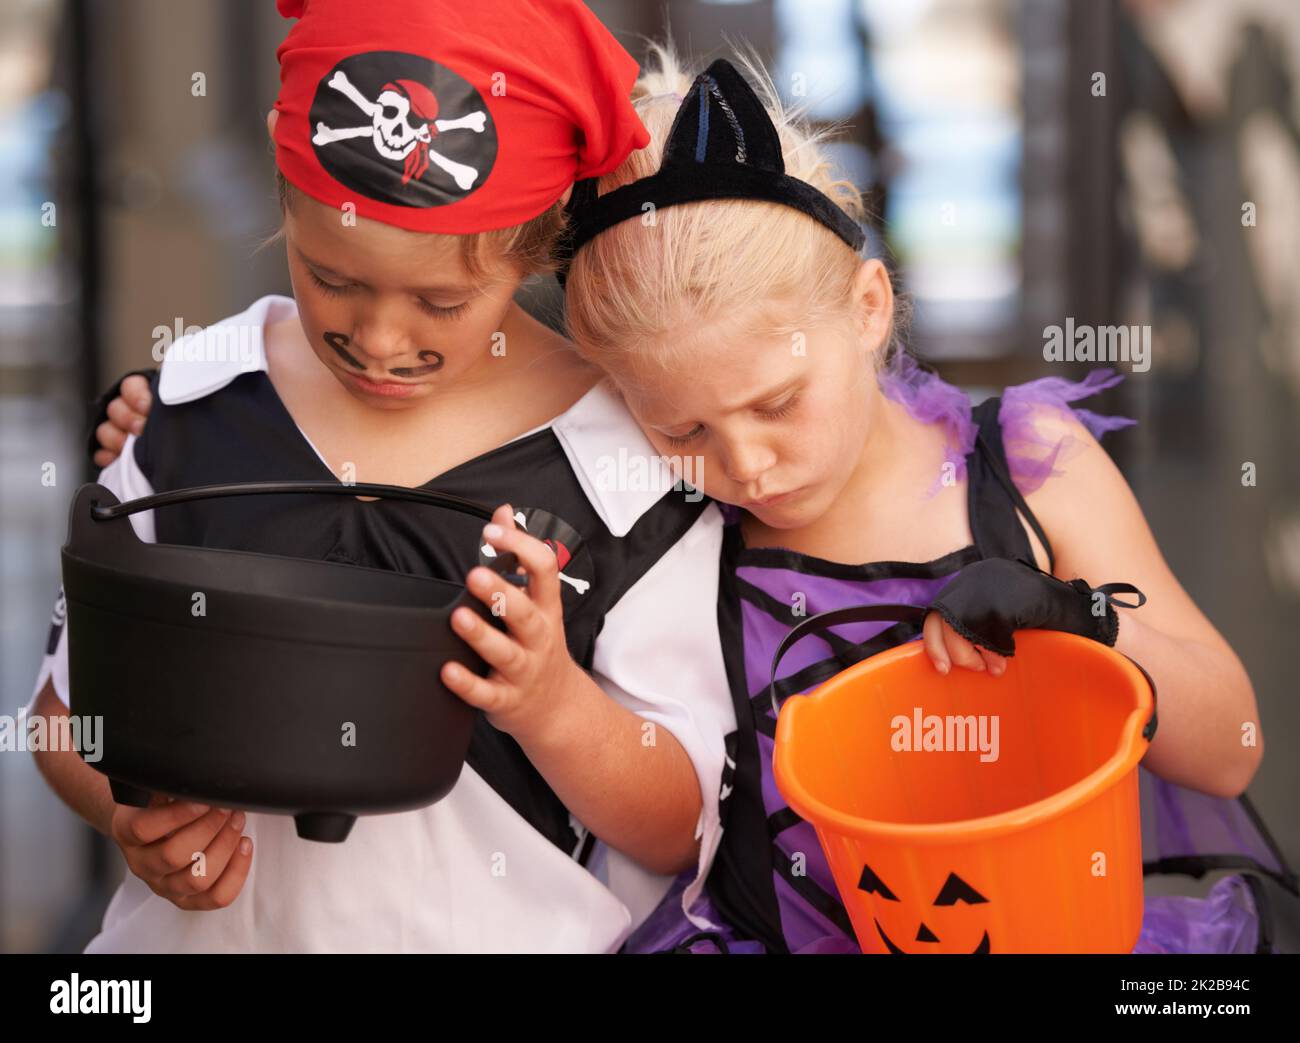 Déceptions infantiles. Un frère et une sœur se sultent ensemble et regardent leurs paniers vides doux à Halloween. Banque D'Images